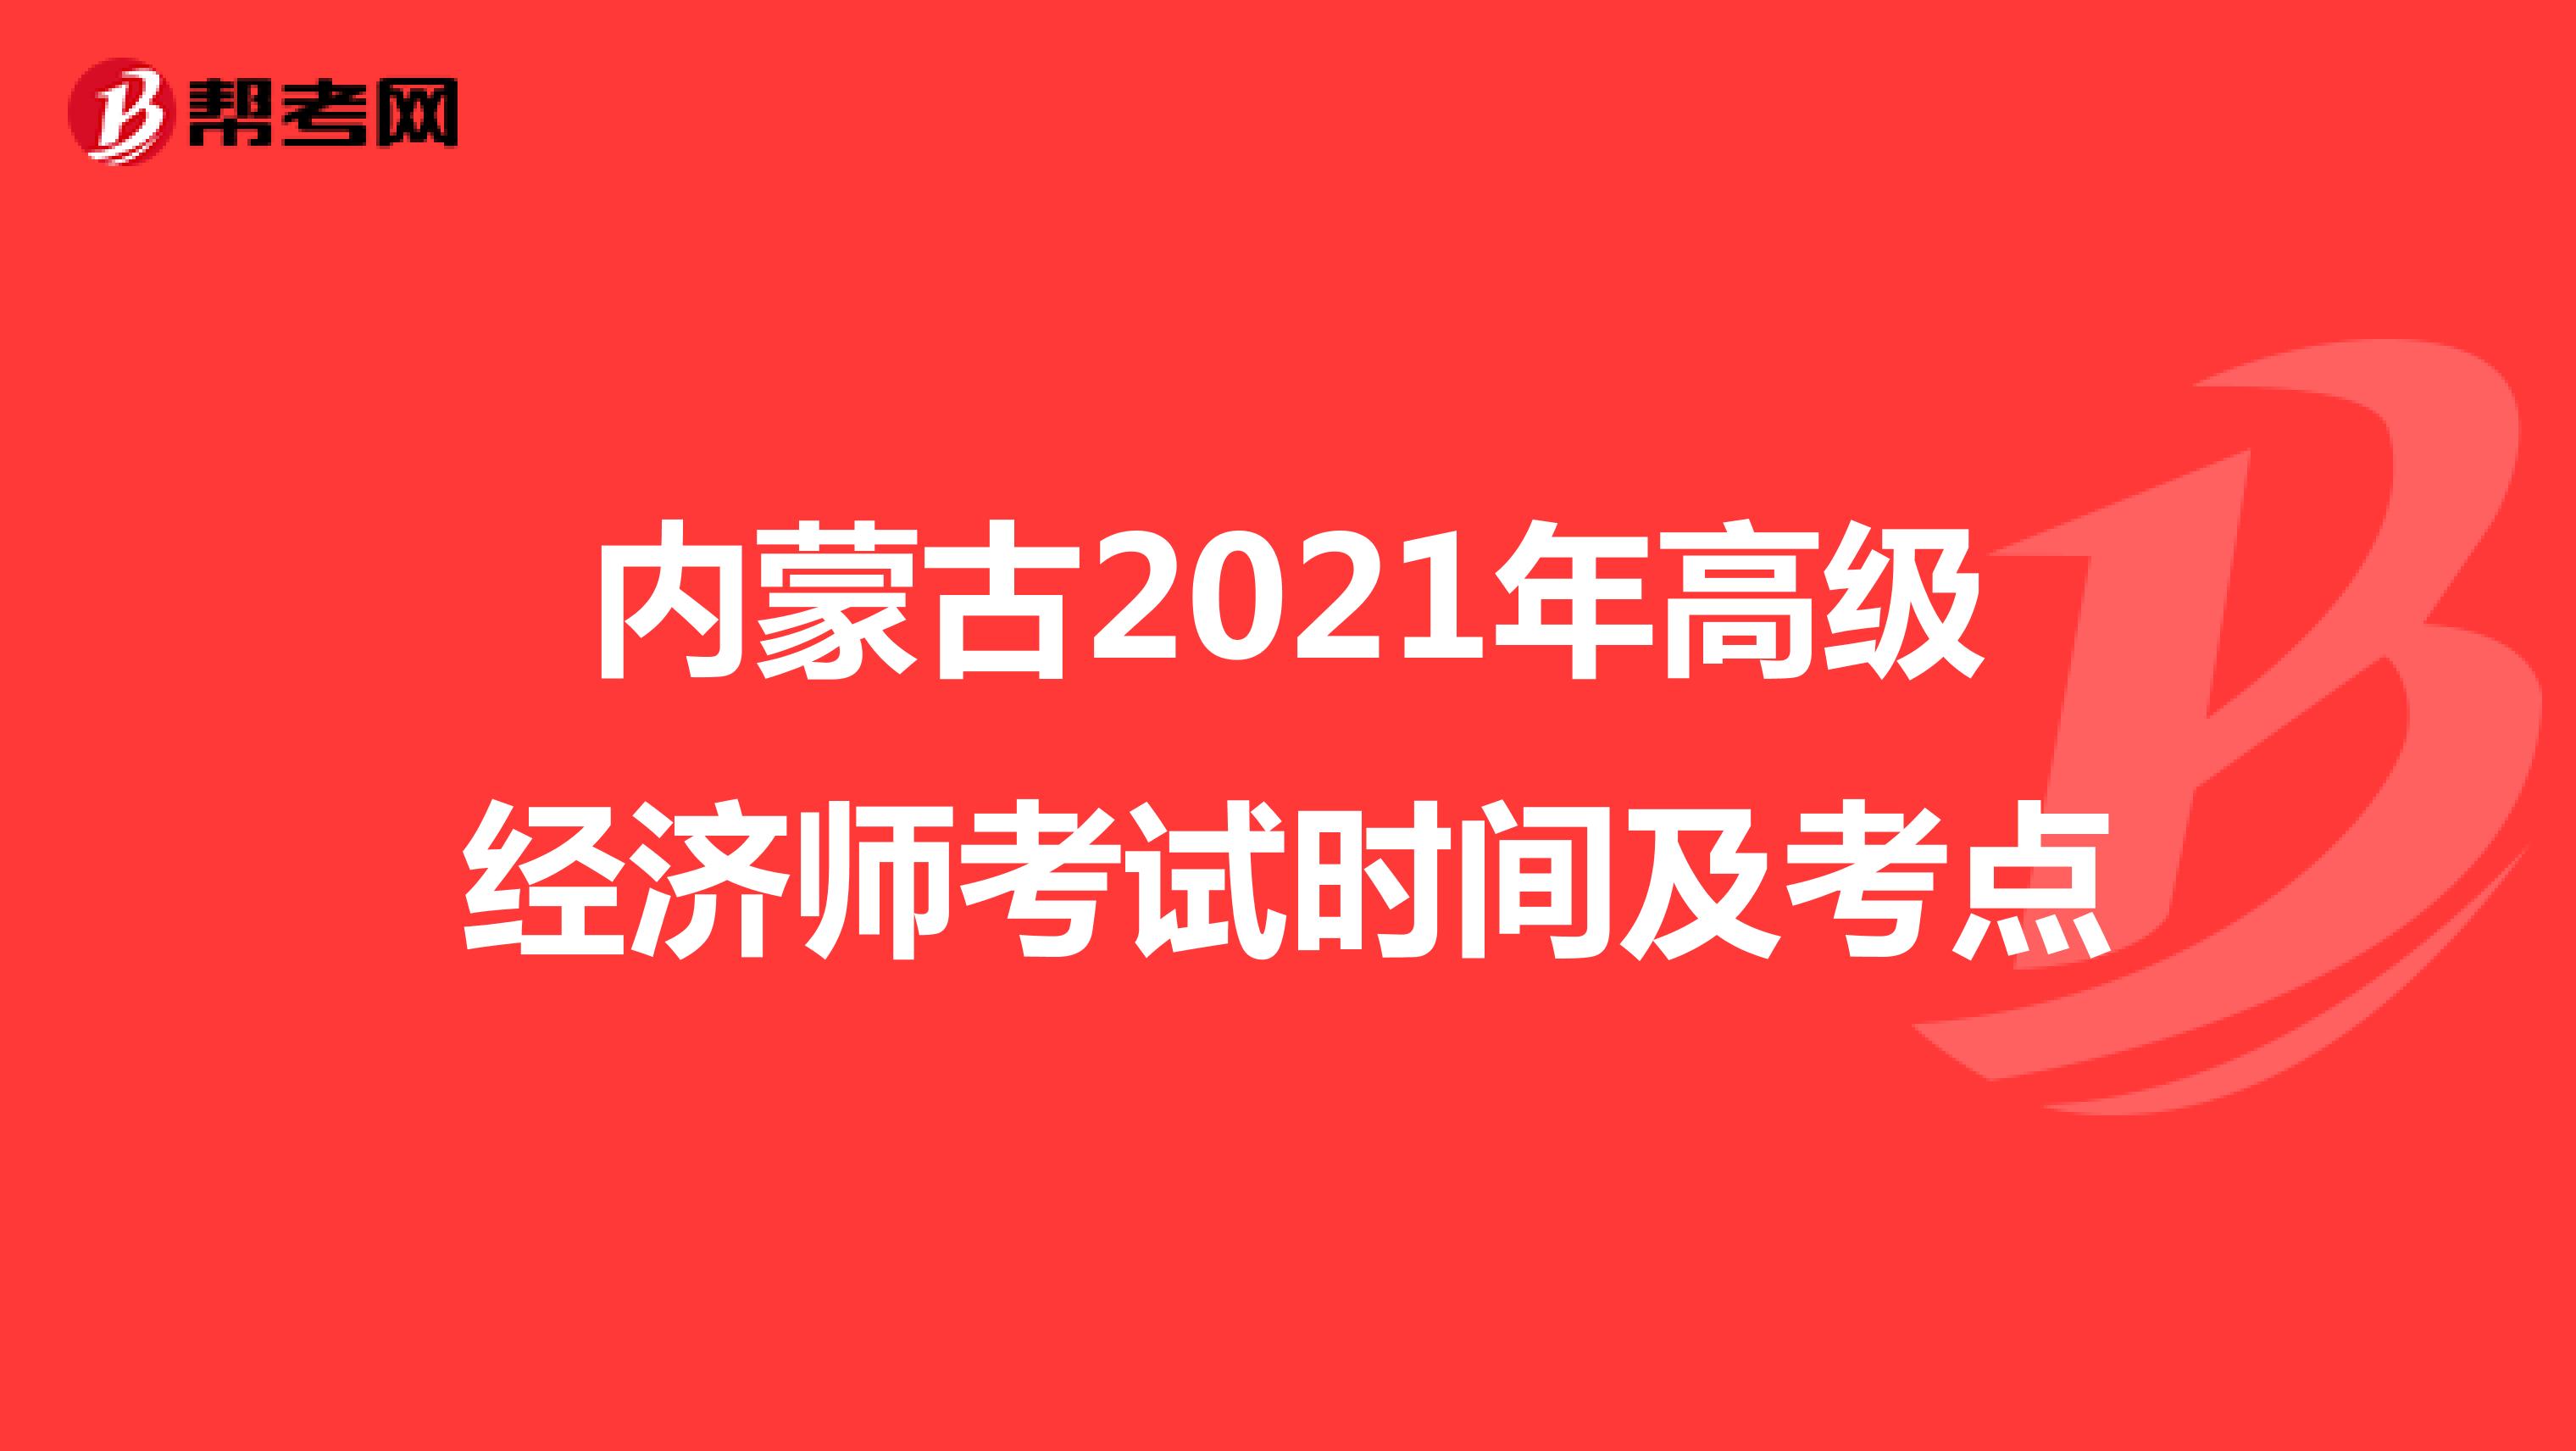 内蒙古2021年高级经济师考试时间及考点